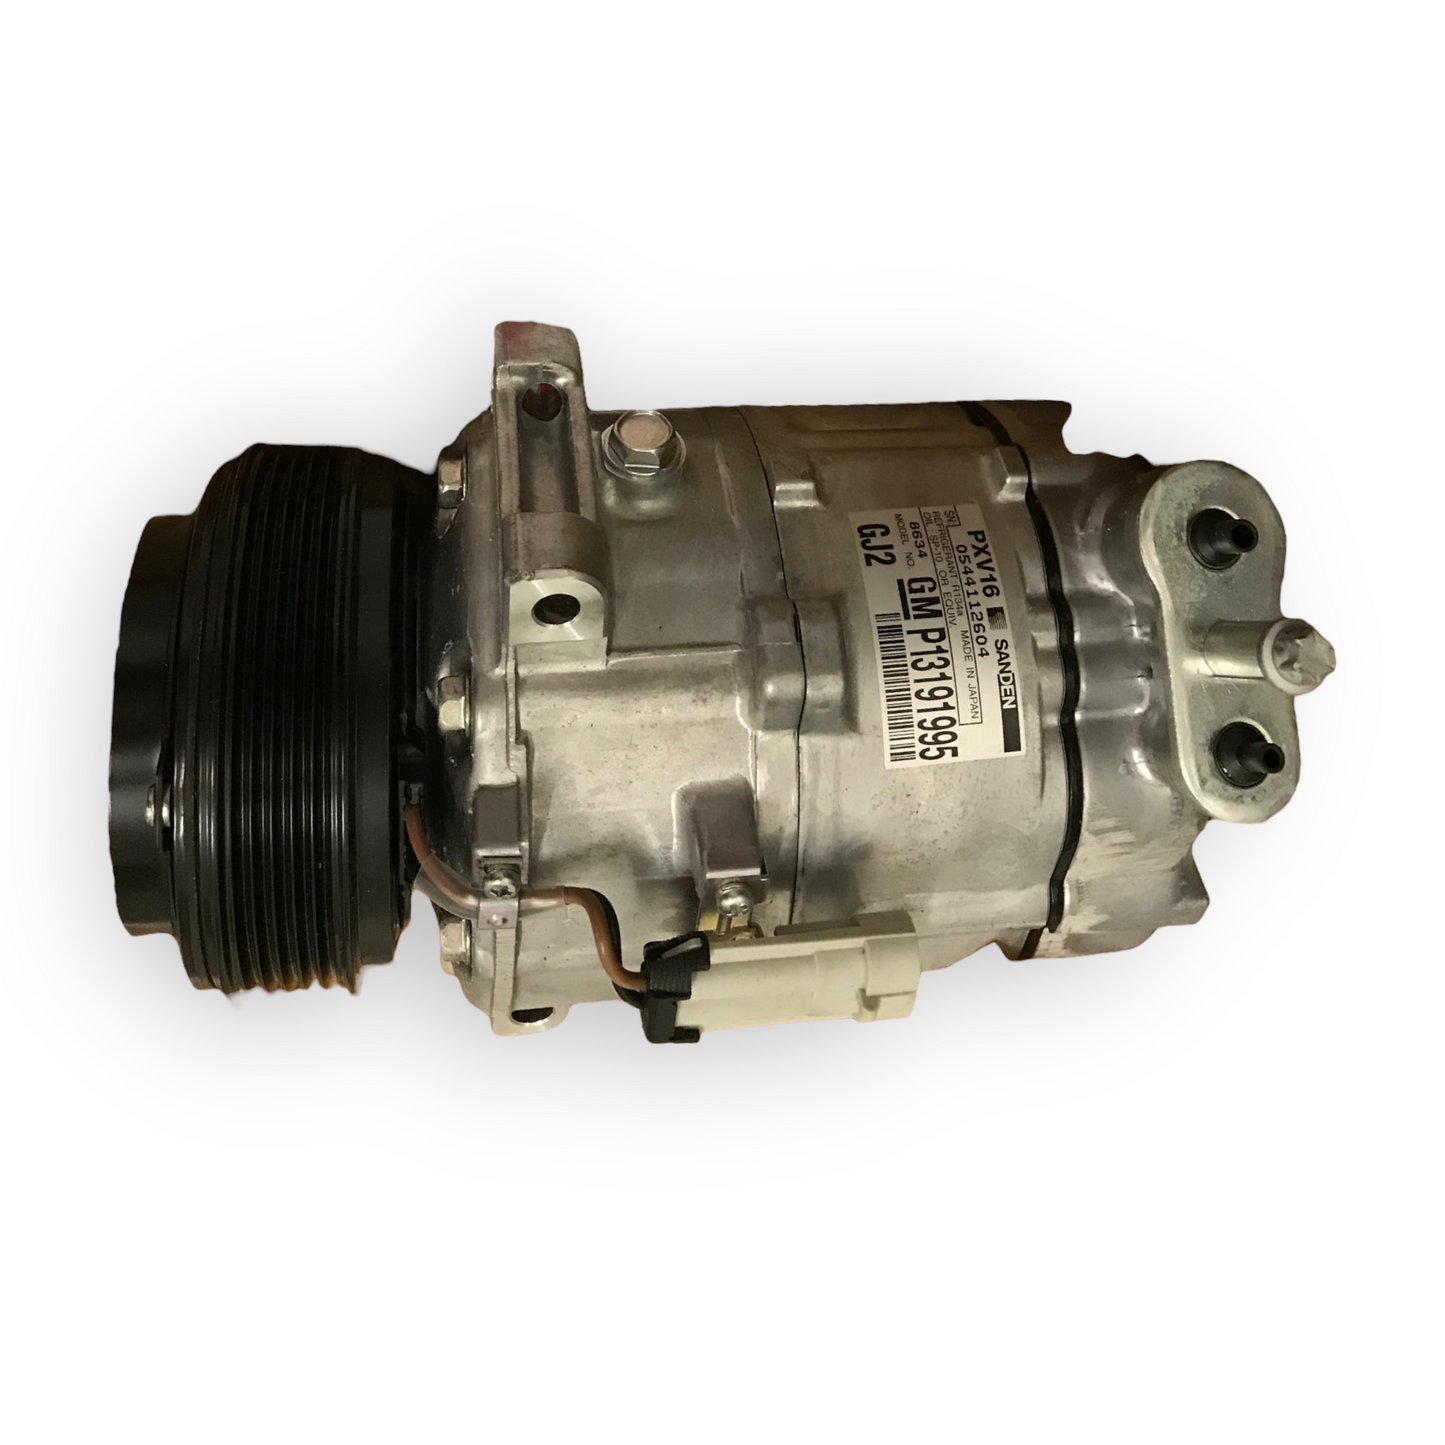 Air con compressor reconditioned - 159 - 71789354